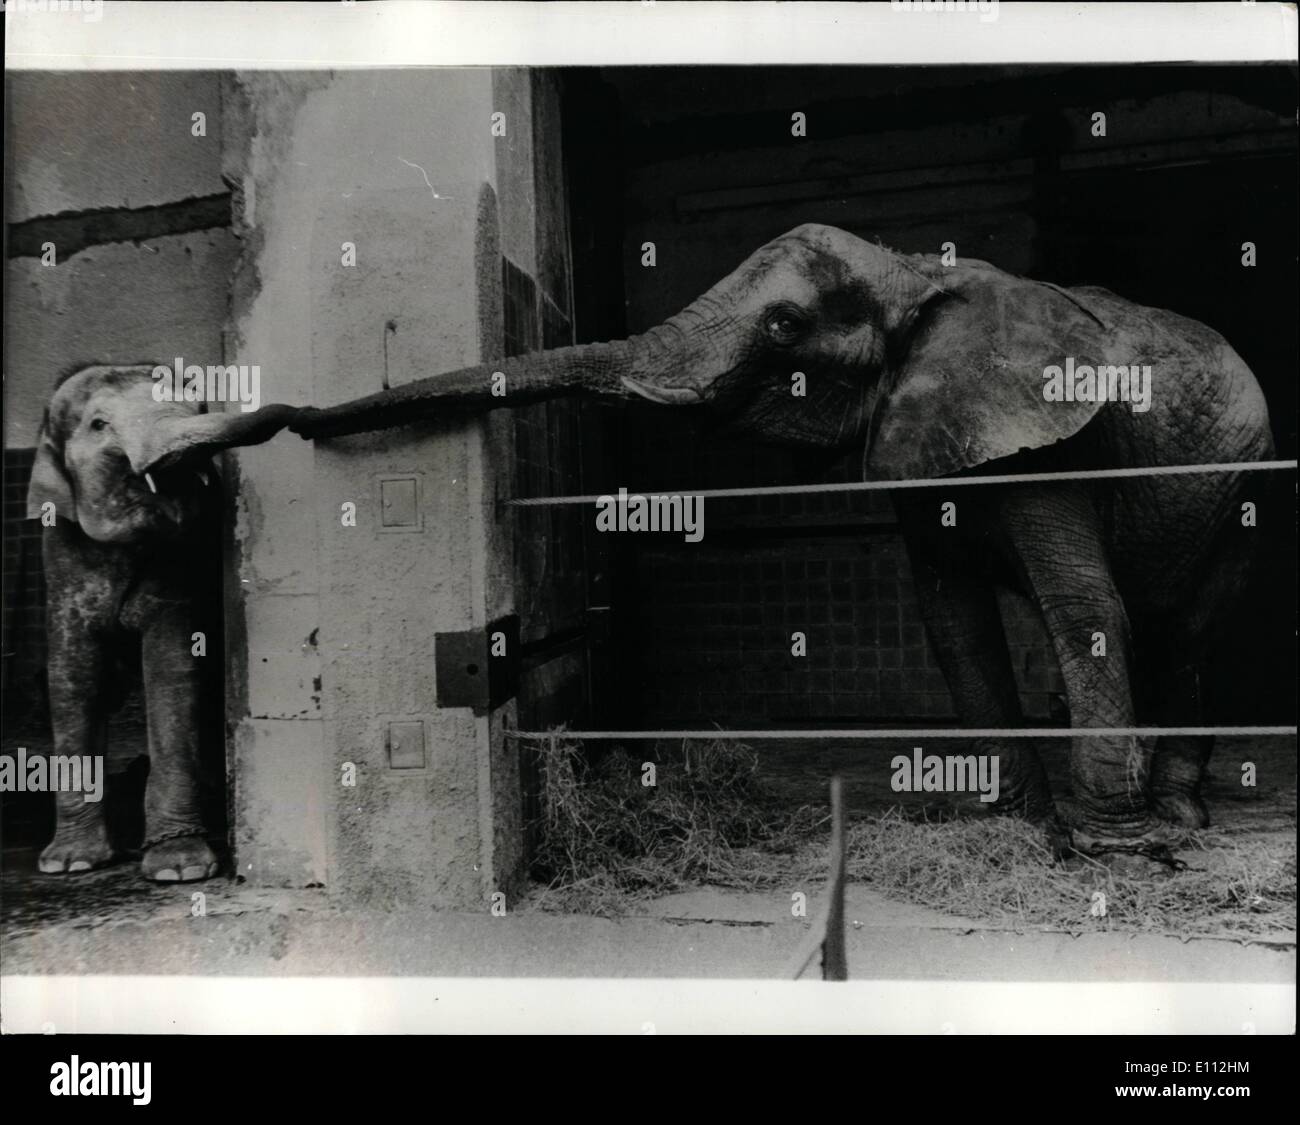 Willkommen Sie 5. Mai 1975 - im Münchner Zoo! Eine alte etablierte Elefanten resident im Zoo von München, erstreckt sich einen einladende Stamm auf eines der zwei junge afrikanischen Elefanten, die im Zoo von Kopenhagen eingetroffen sind. Stockfoto